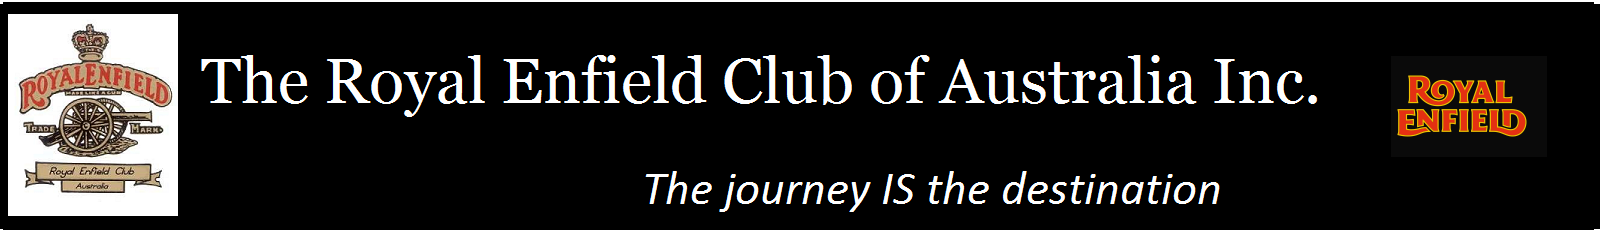 The Royal Enfield Club of Australia Inc